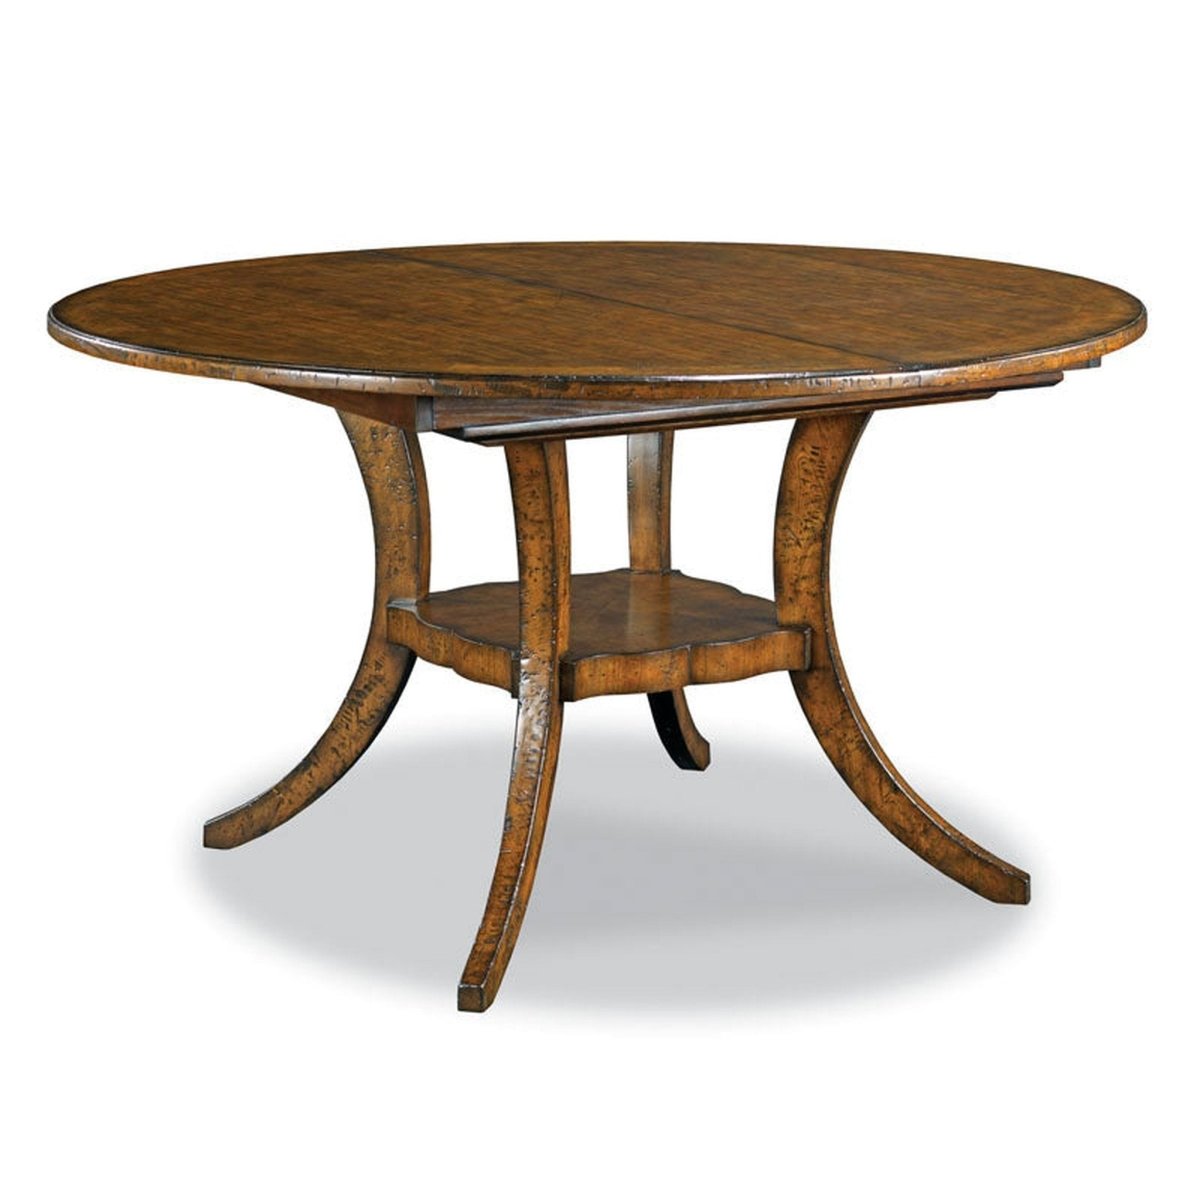 WoodBridge Furniture Sonoma Dining Table - 5057-08 - 5057-08 - WoodBridge Furniture - $3769.88